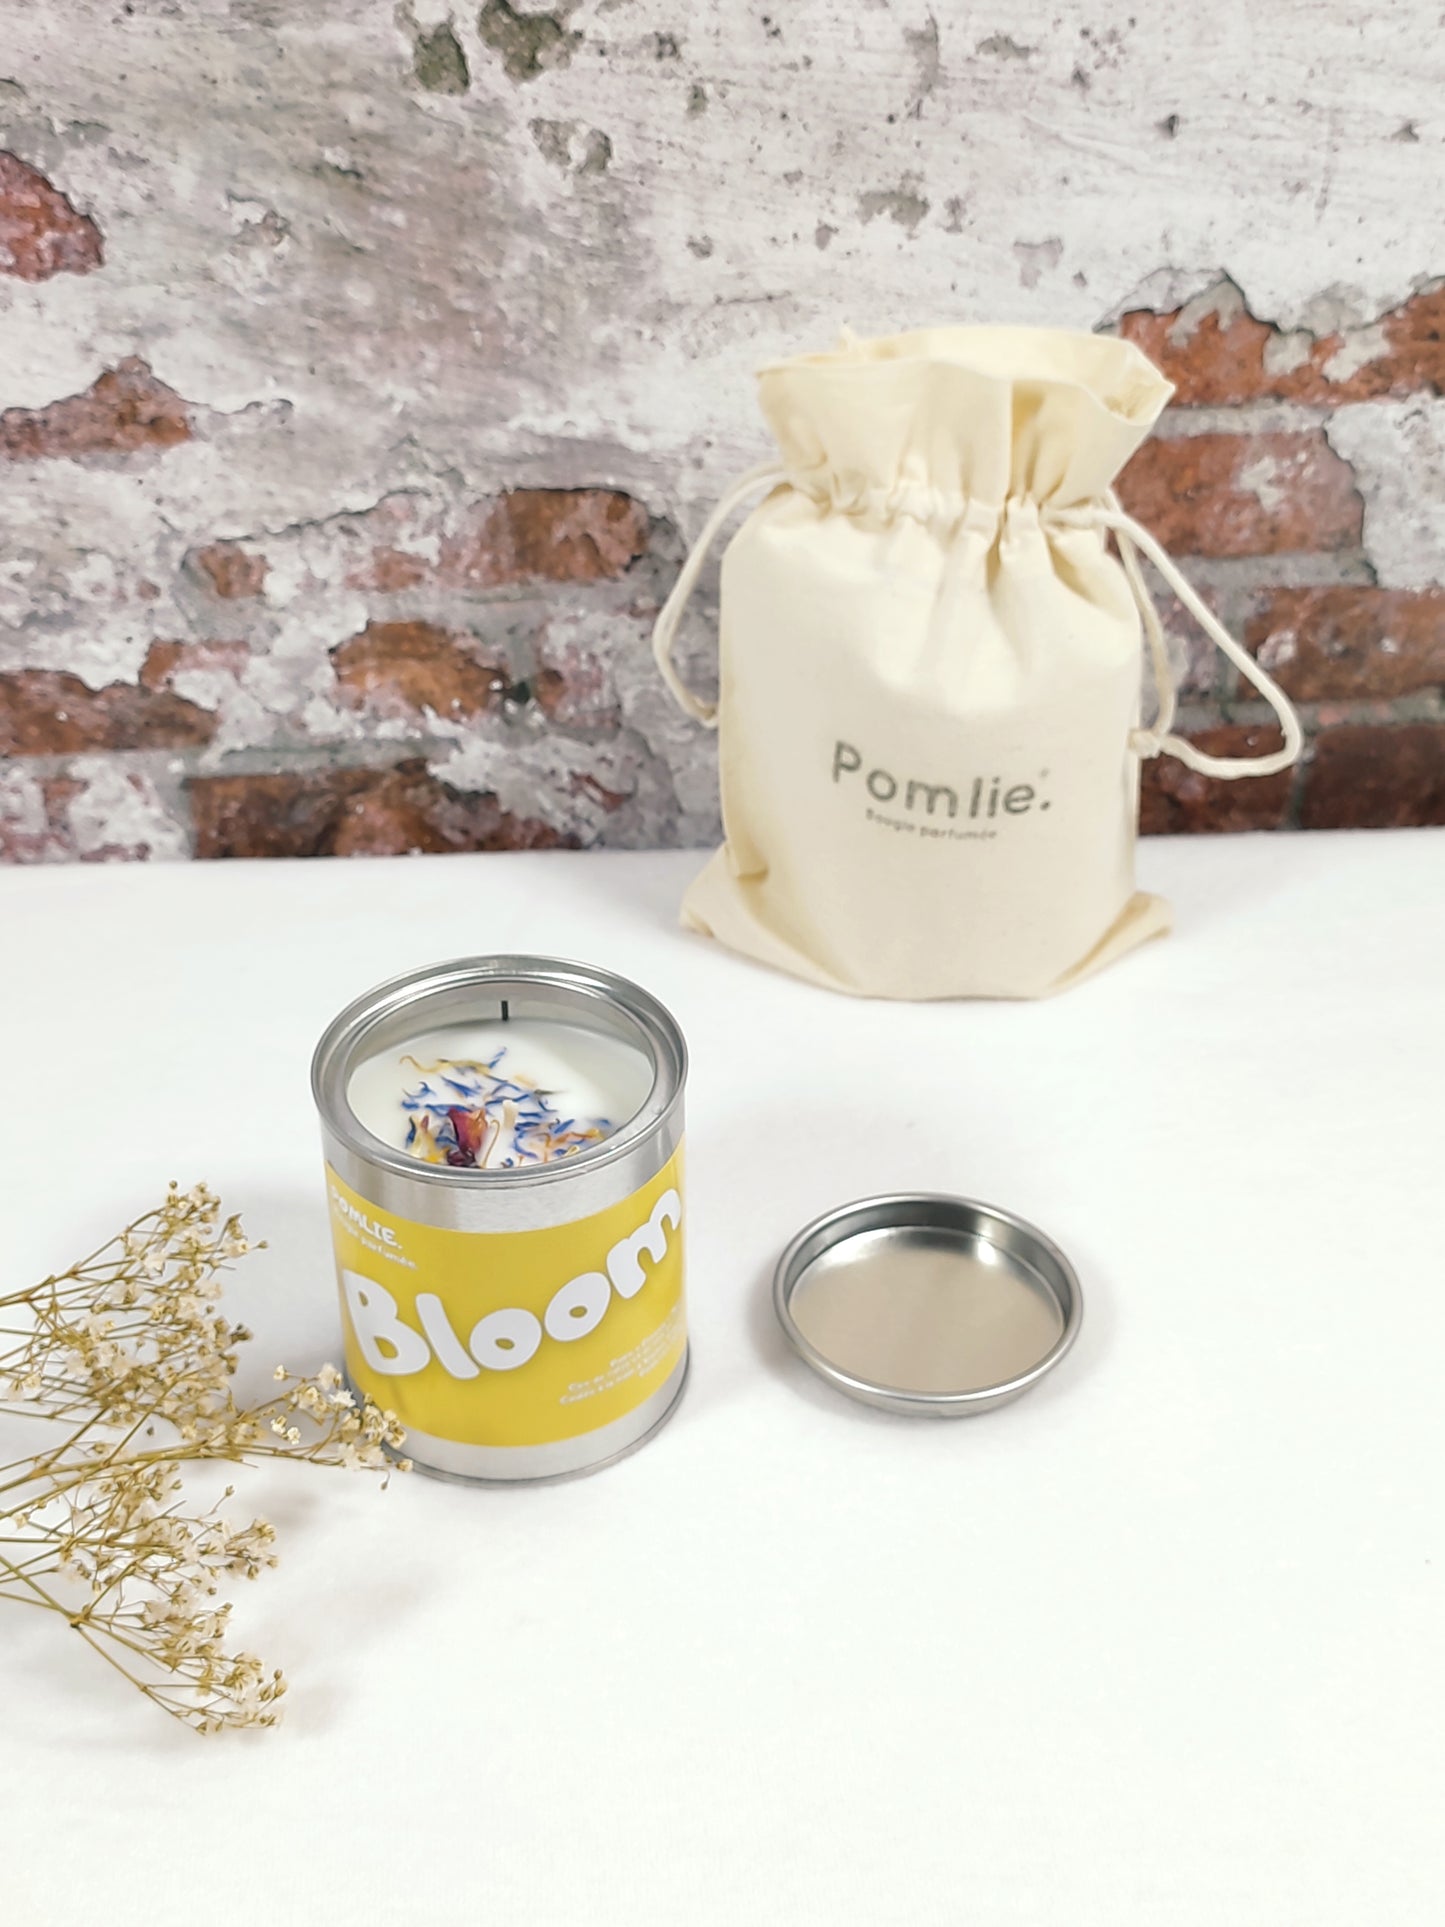 Bougie Pomlie Bloom dans une boîte en métal jaune avec sac en coton.